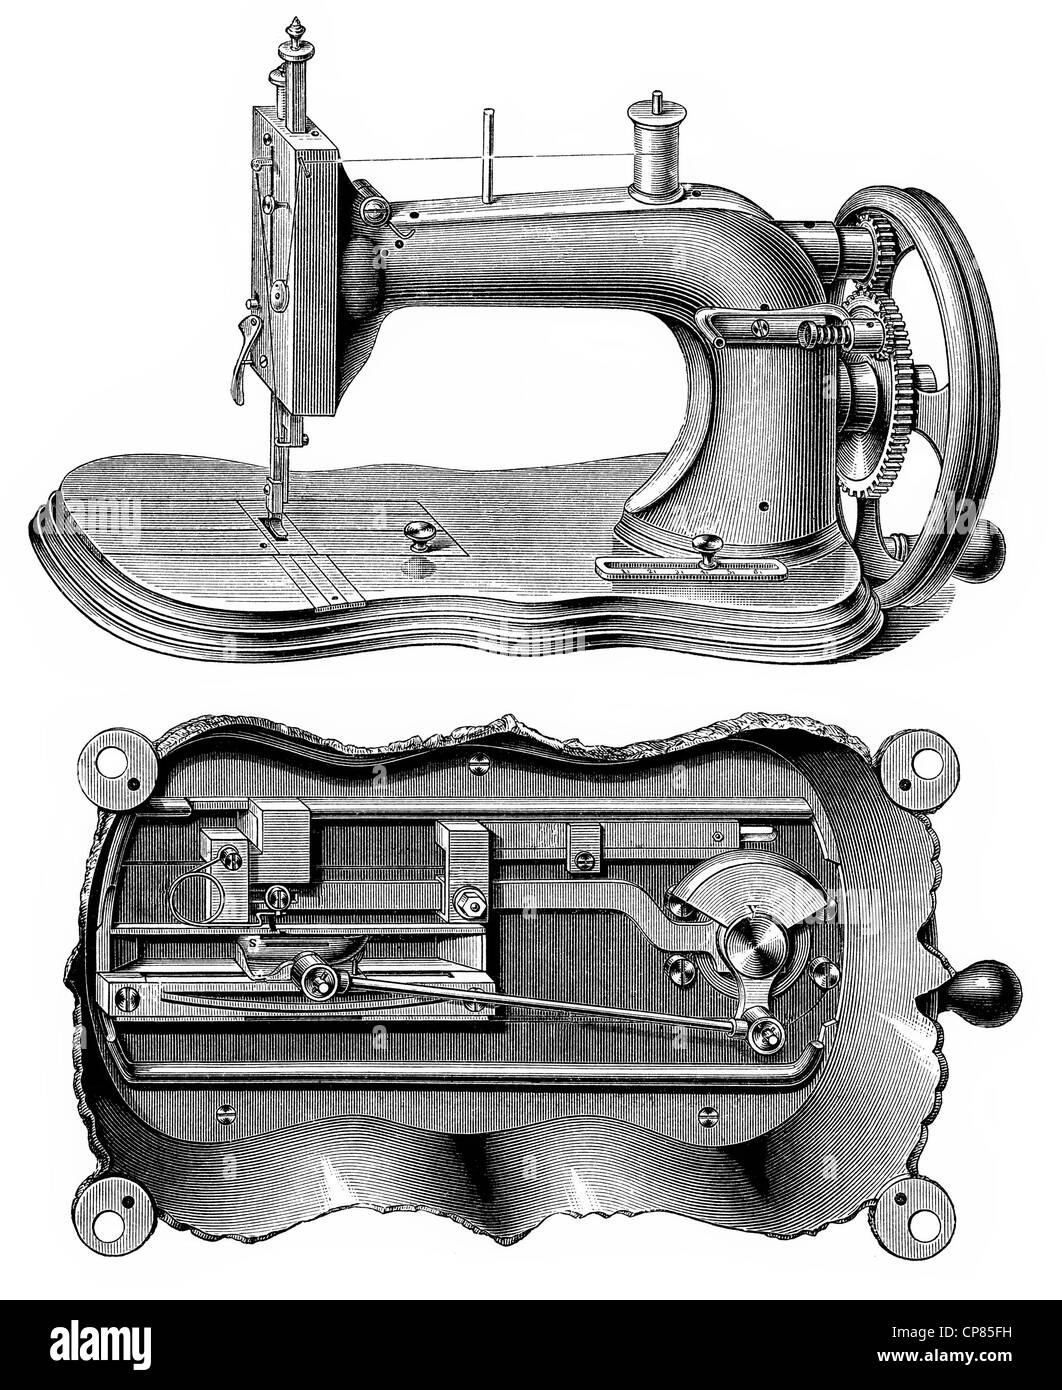 schematic drawing of a sewing machine, Singer system, 19th century, Historische, zeichnerische Darstellung, schematische Zeichnu Stock Photo